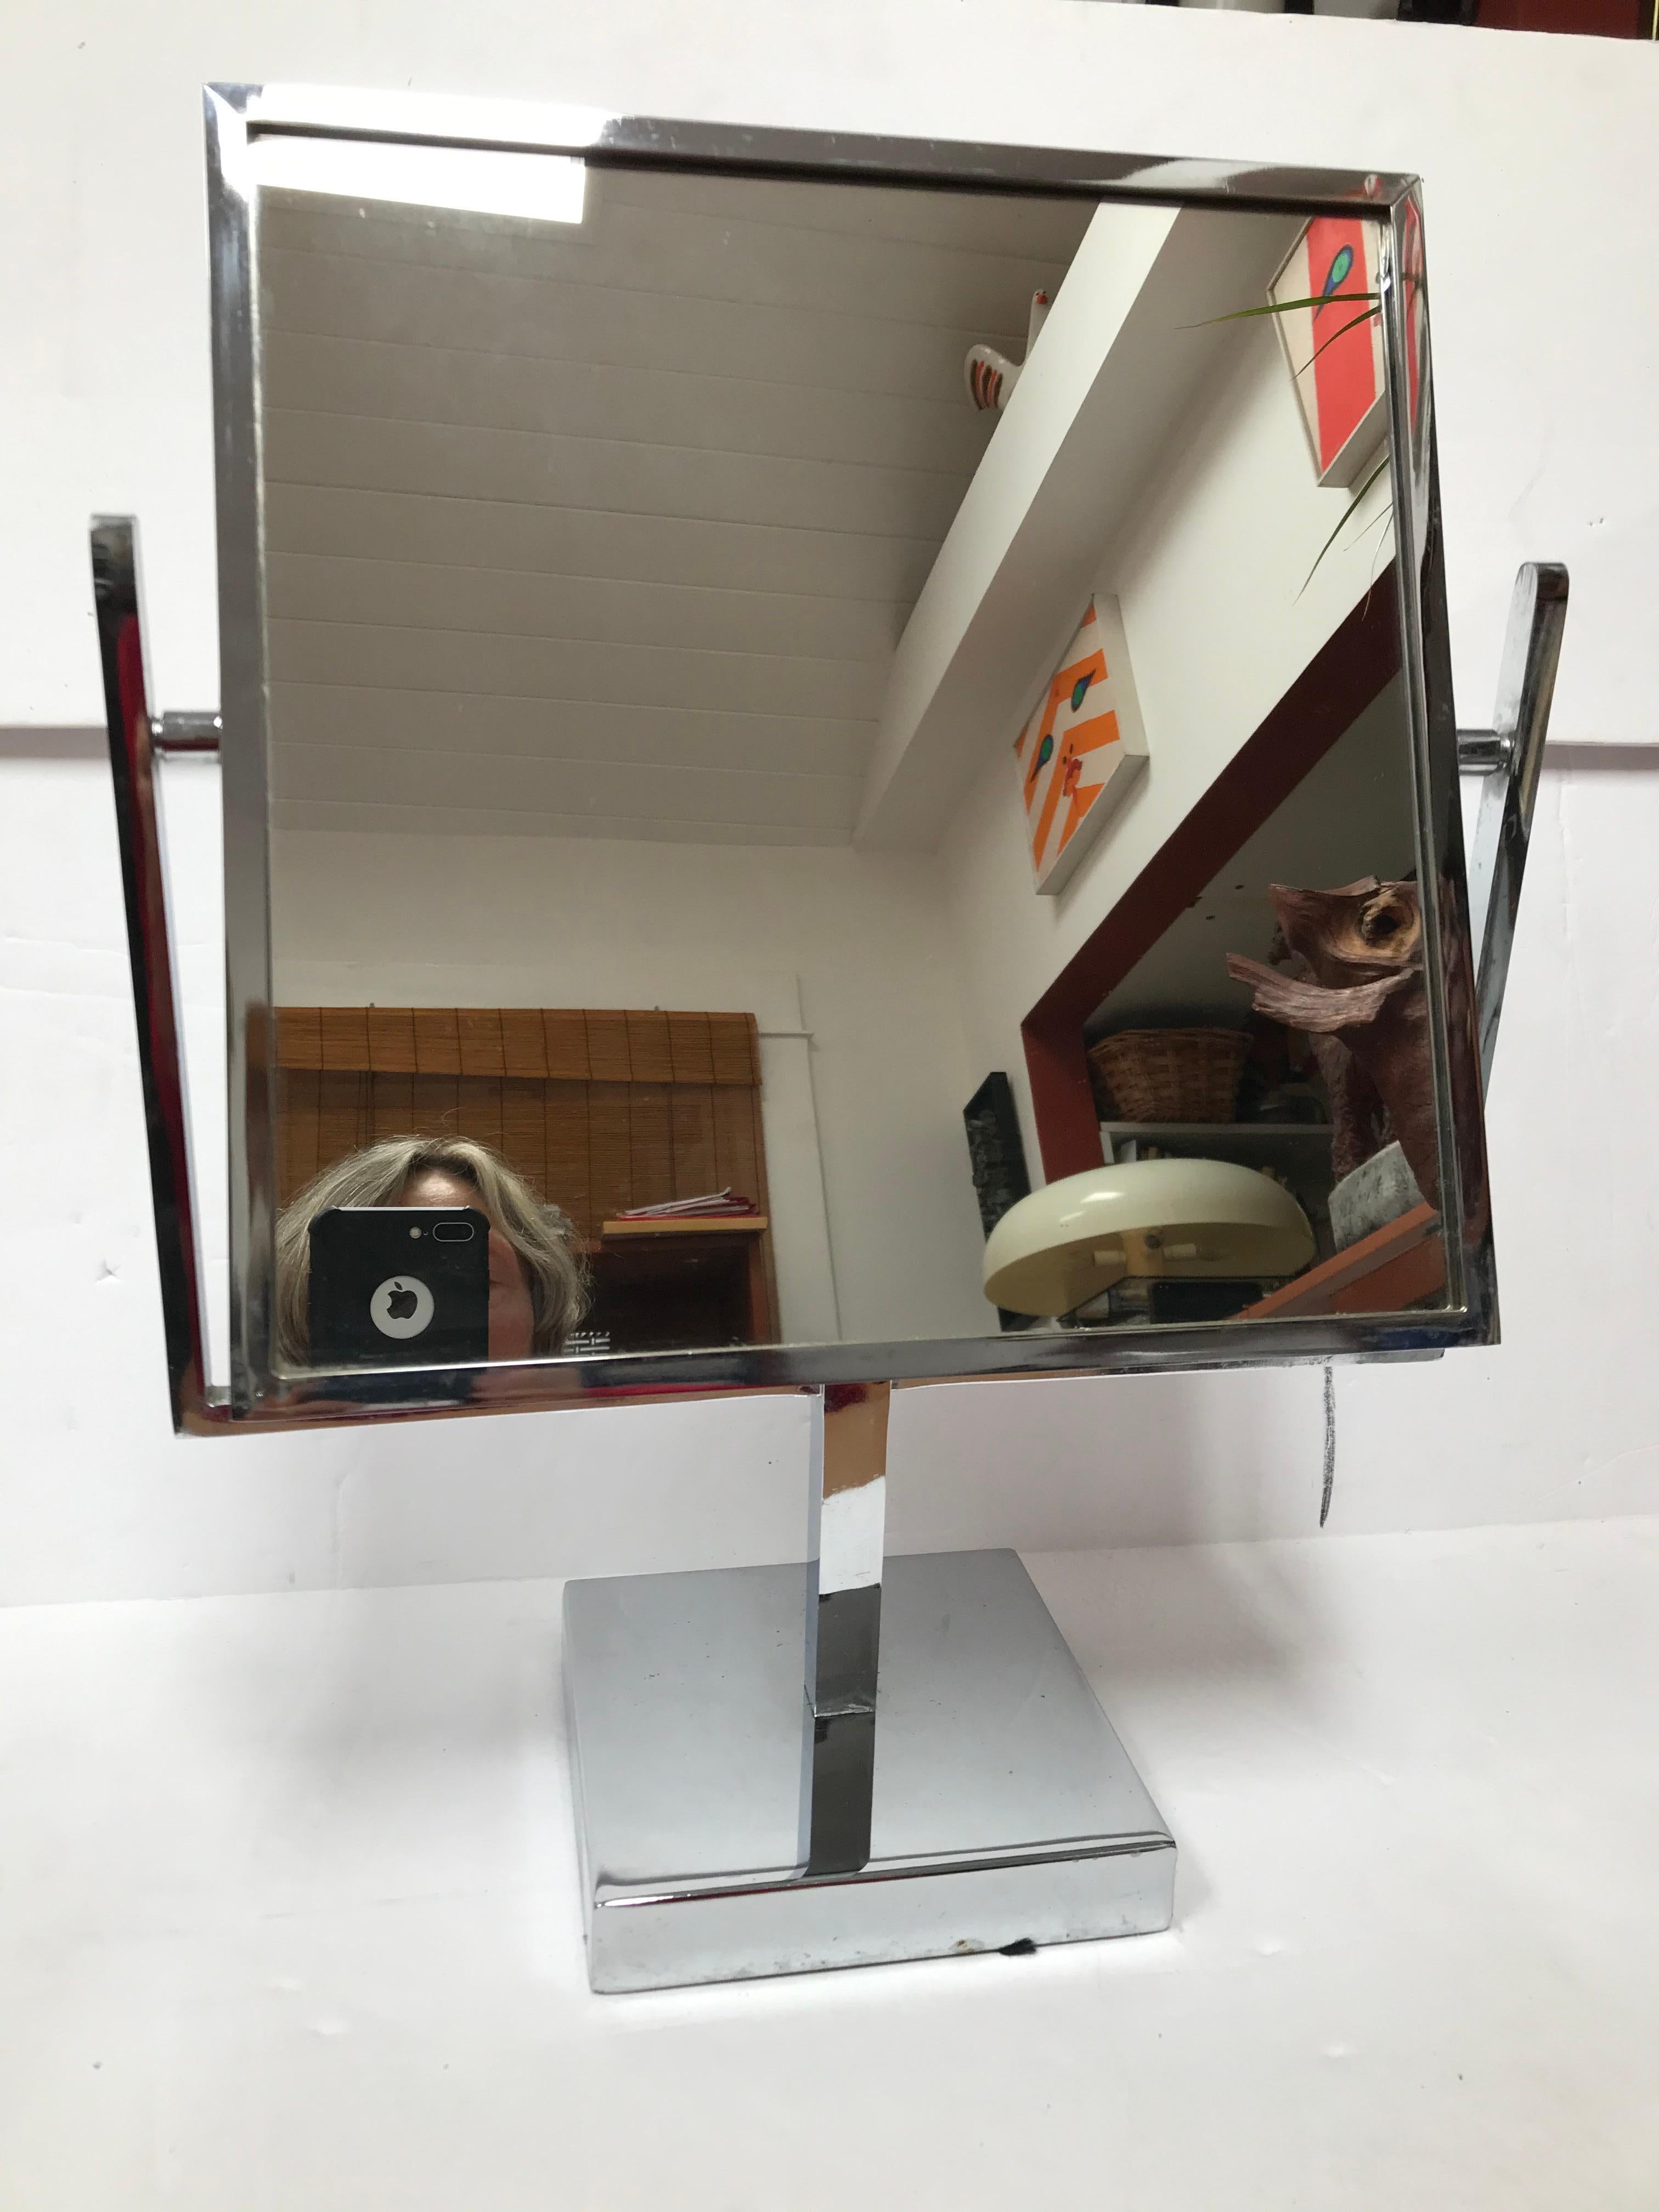 Ce miroir de courtoisie chromé double face est attribué à Charles Hollis Jones. Il est doté d'une base chromée et d'un miroir double face, typique des années 1970.

Charles Hollis Jones est un artiste et designer de meubles américain reconnu par la